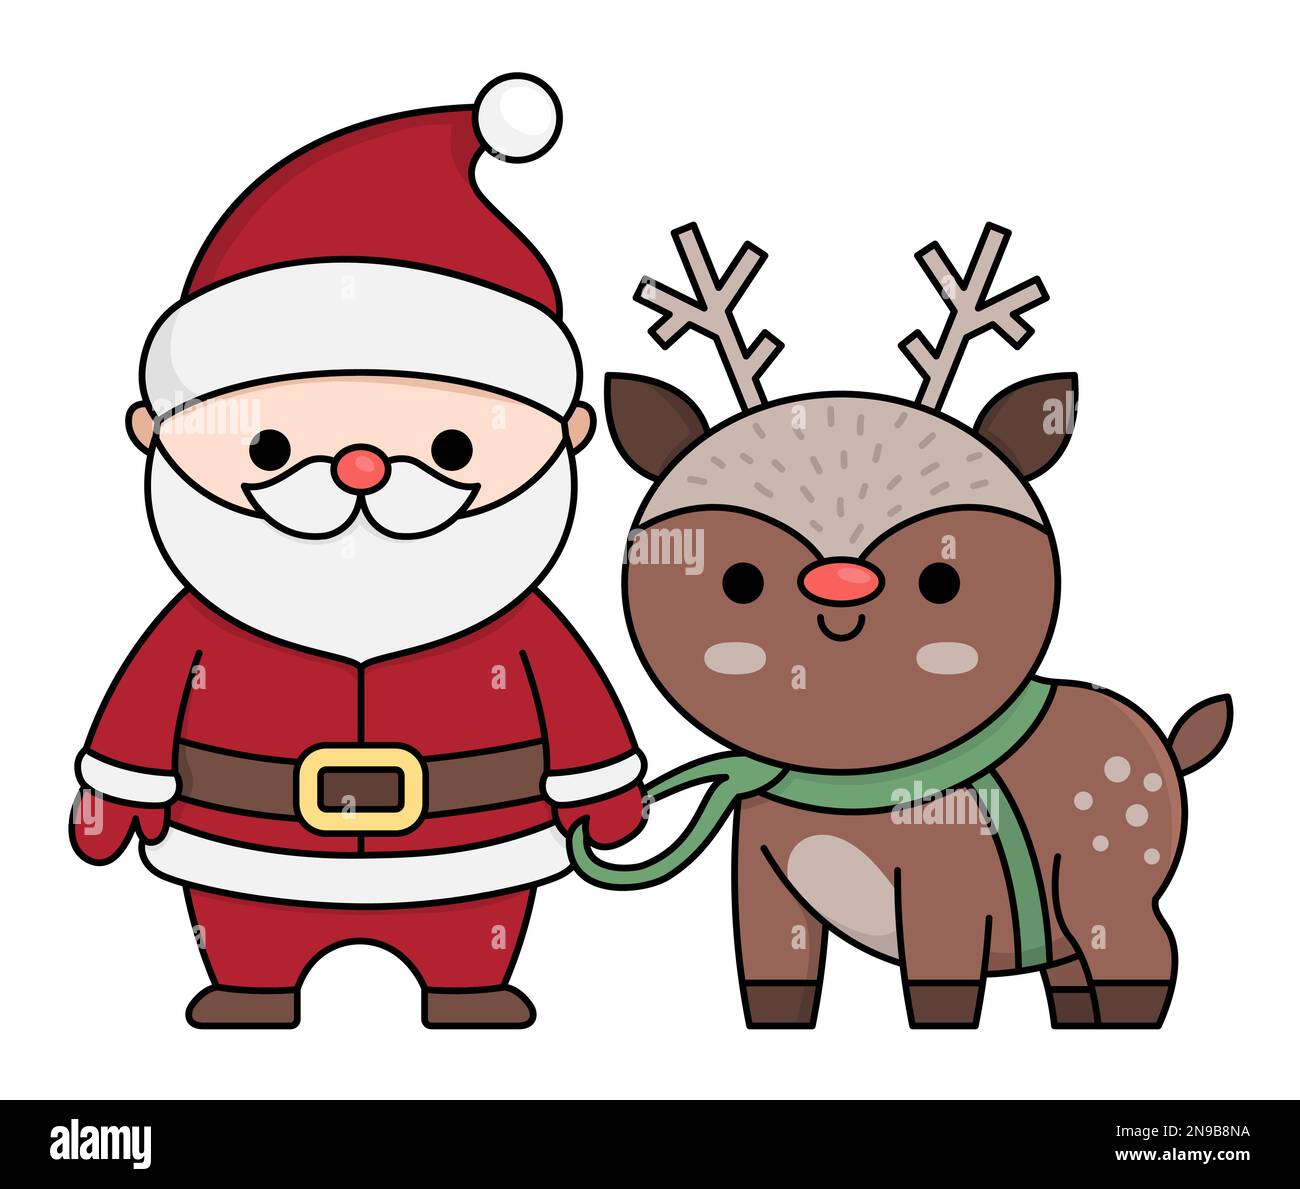 Vektorfarbener Kawaii Weihnachtsmann mit Hirsch. Süße Vater Frost Illustration isoliert auf Weiß. Weihnachtsmann, Winter oder Neujahr mit Rentier. Stock Vektor